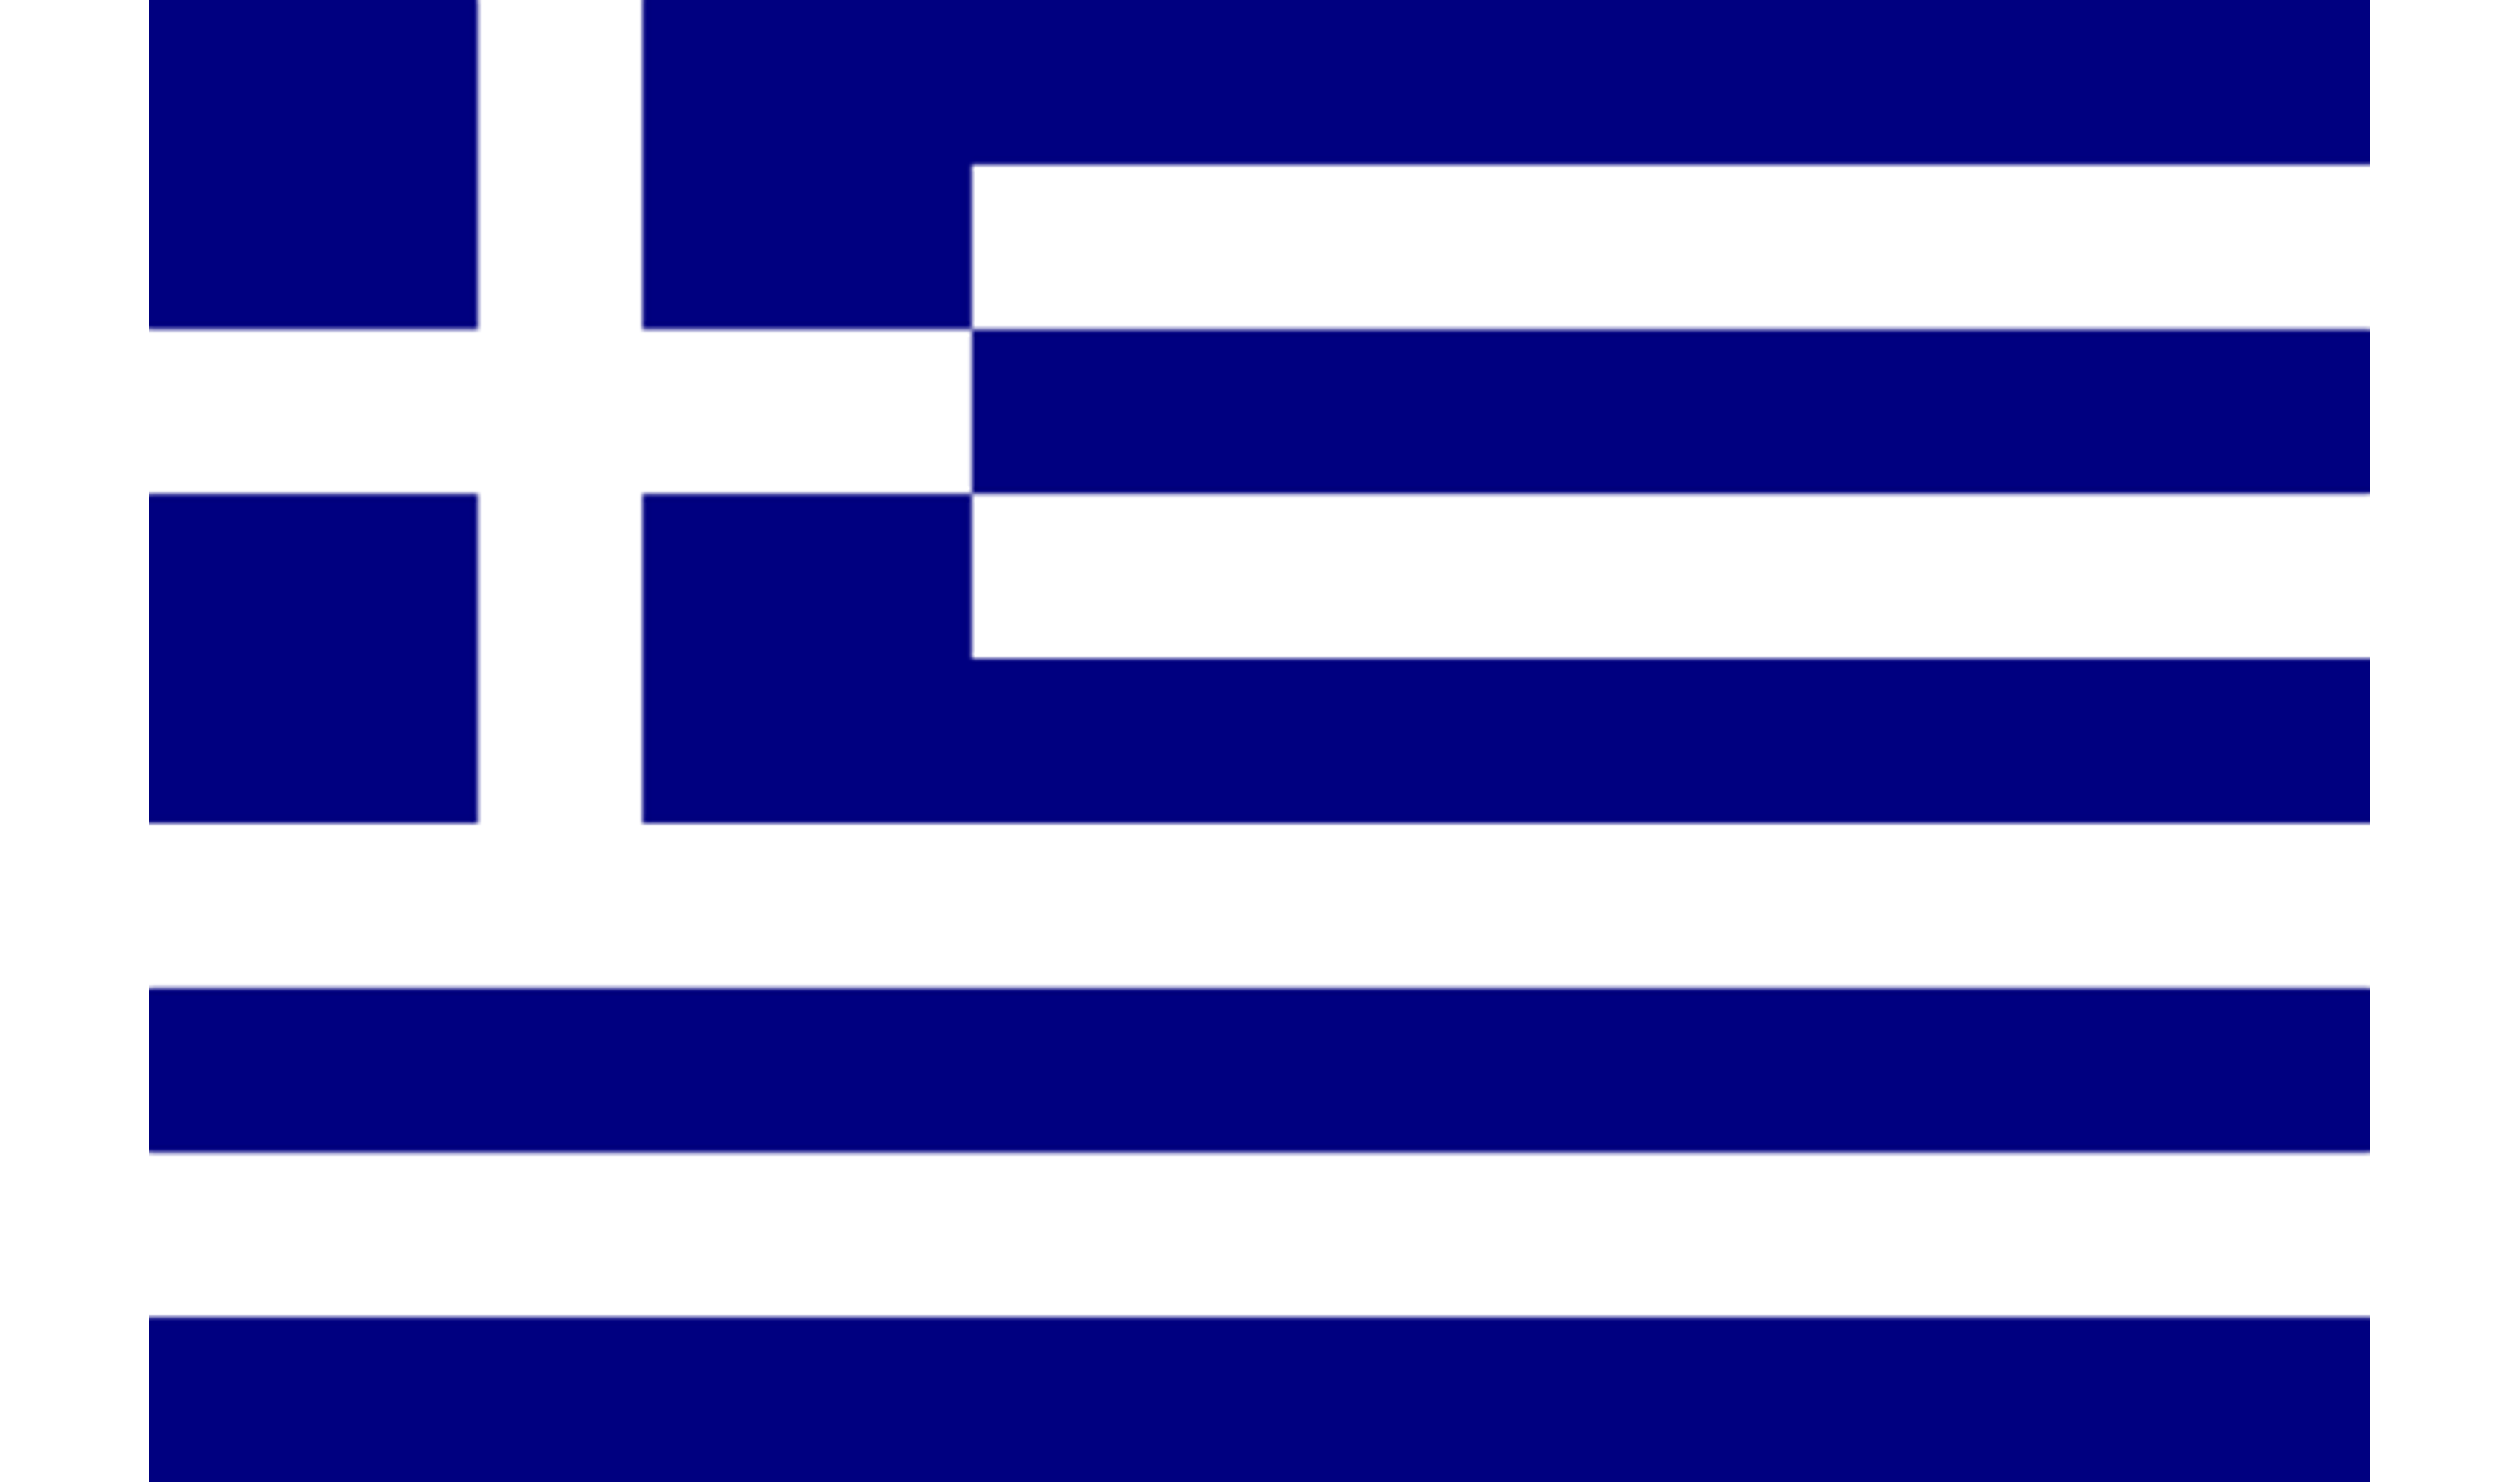 חקיקה חדשה ביוון הנושא אגירת אנרגיה